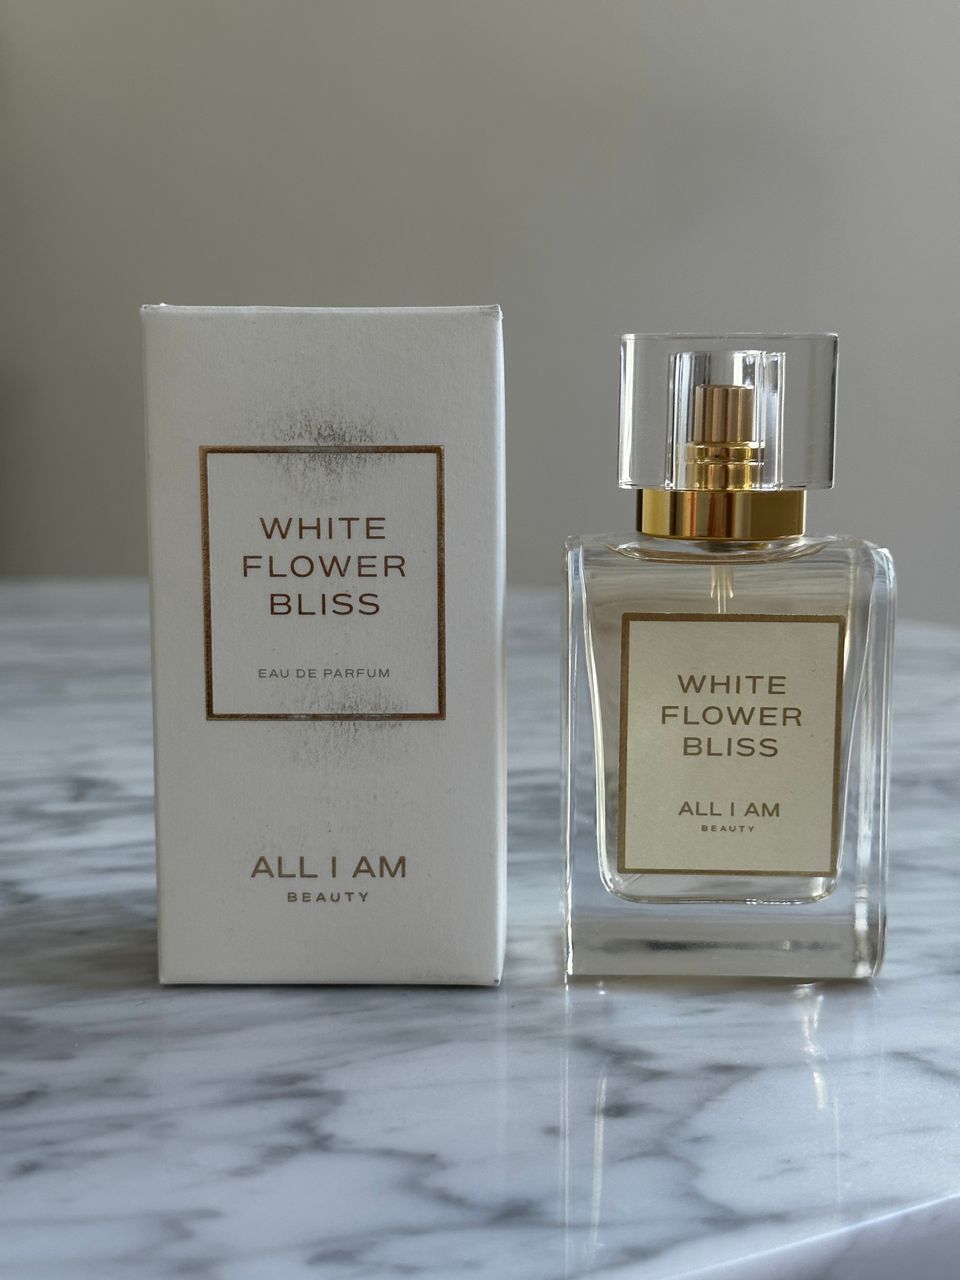 All I Am Beauty - White Flower Bliss EdP 50 ml